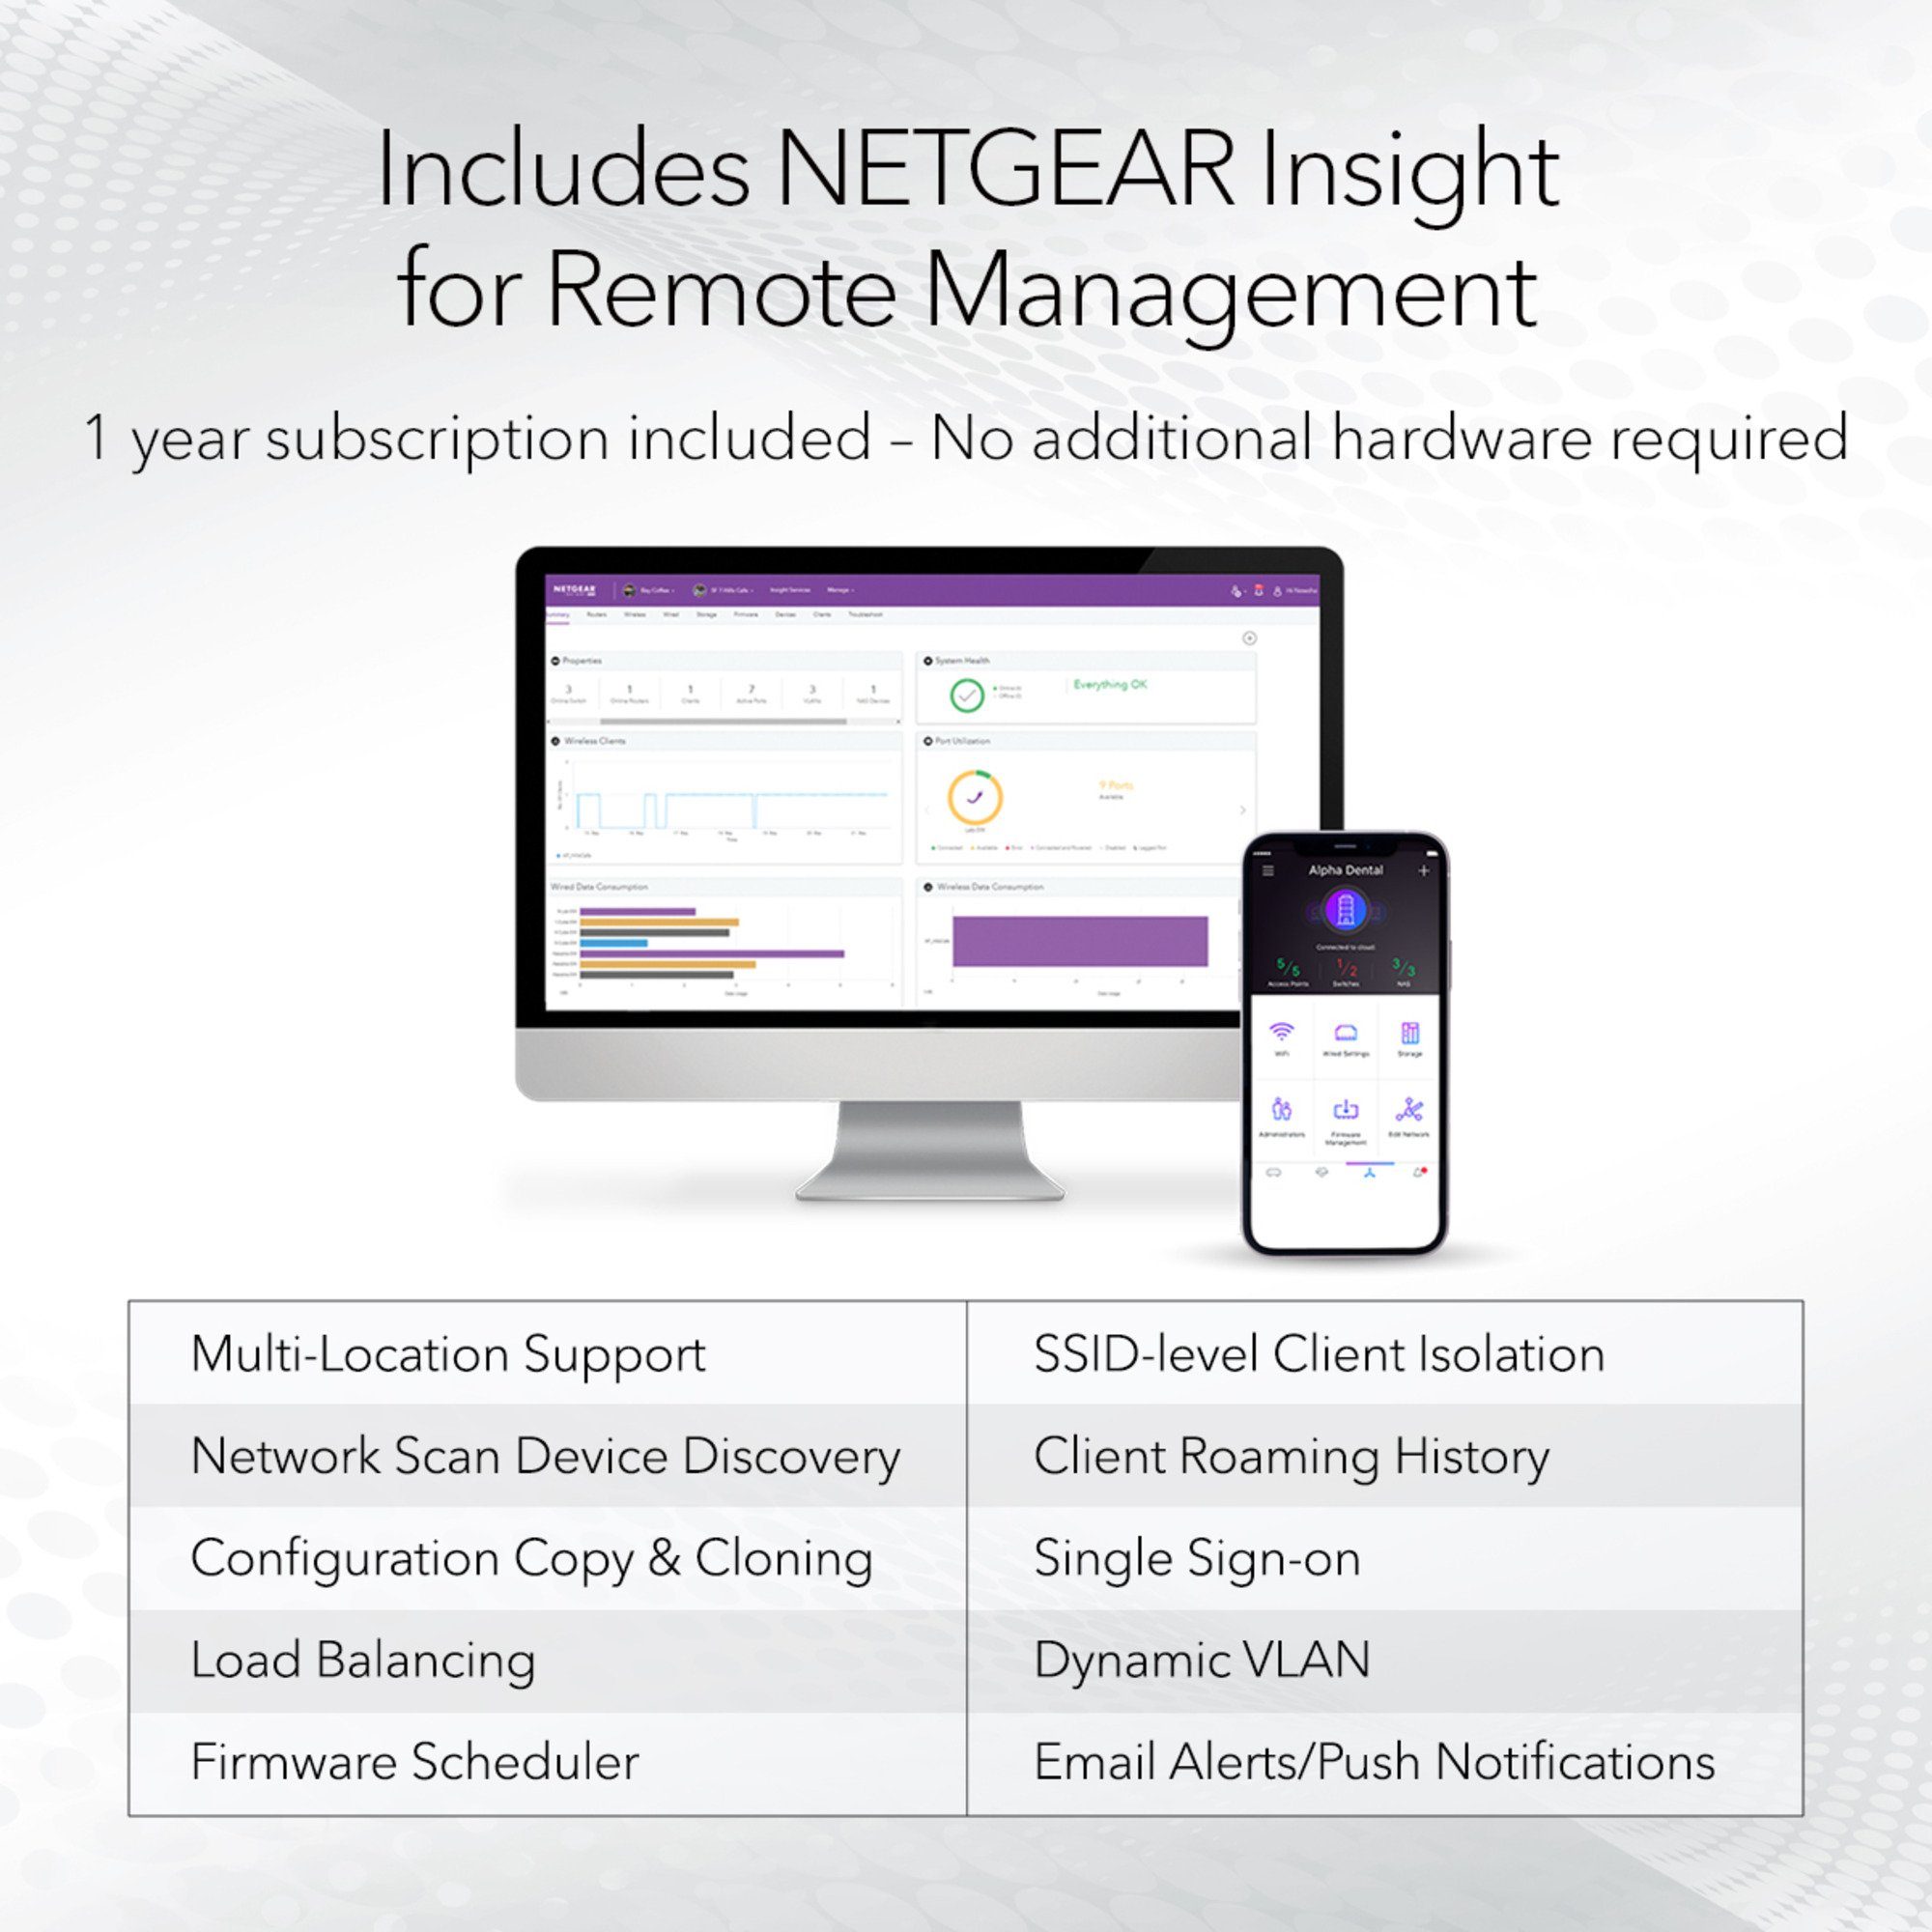 NETGEAR Netgear WAX610, Access Point WLAN-Repeater